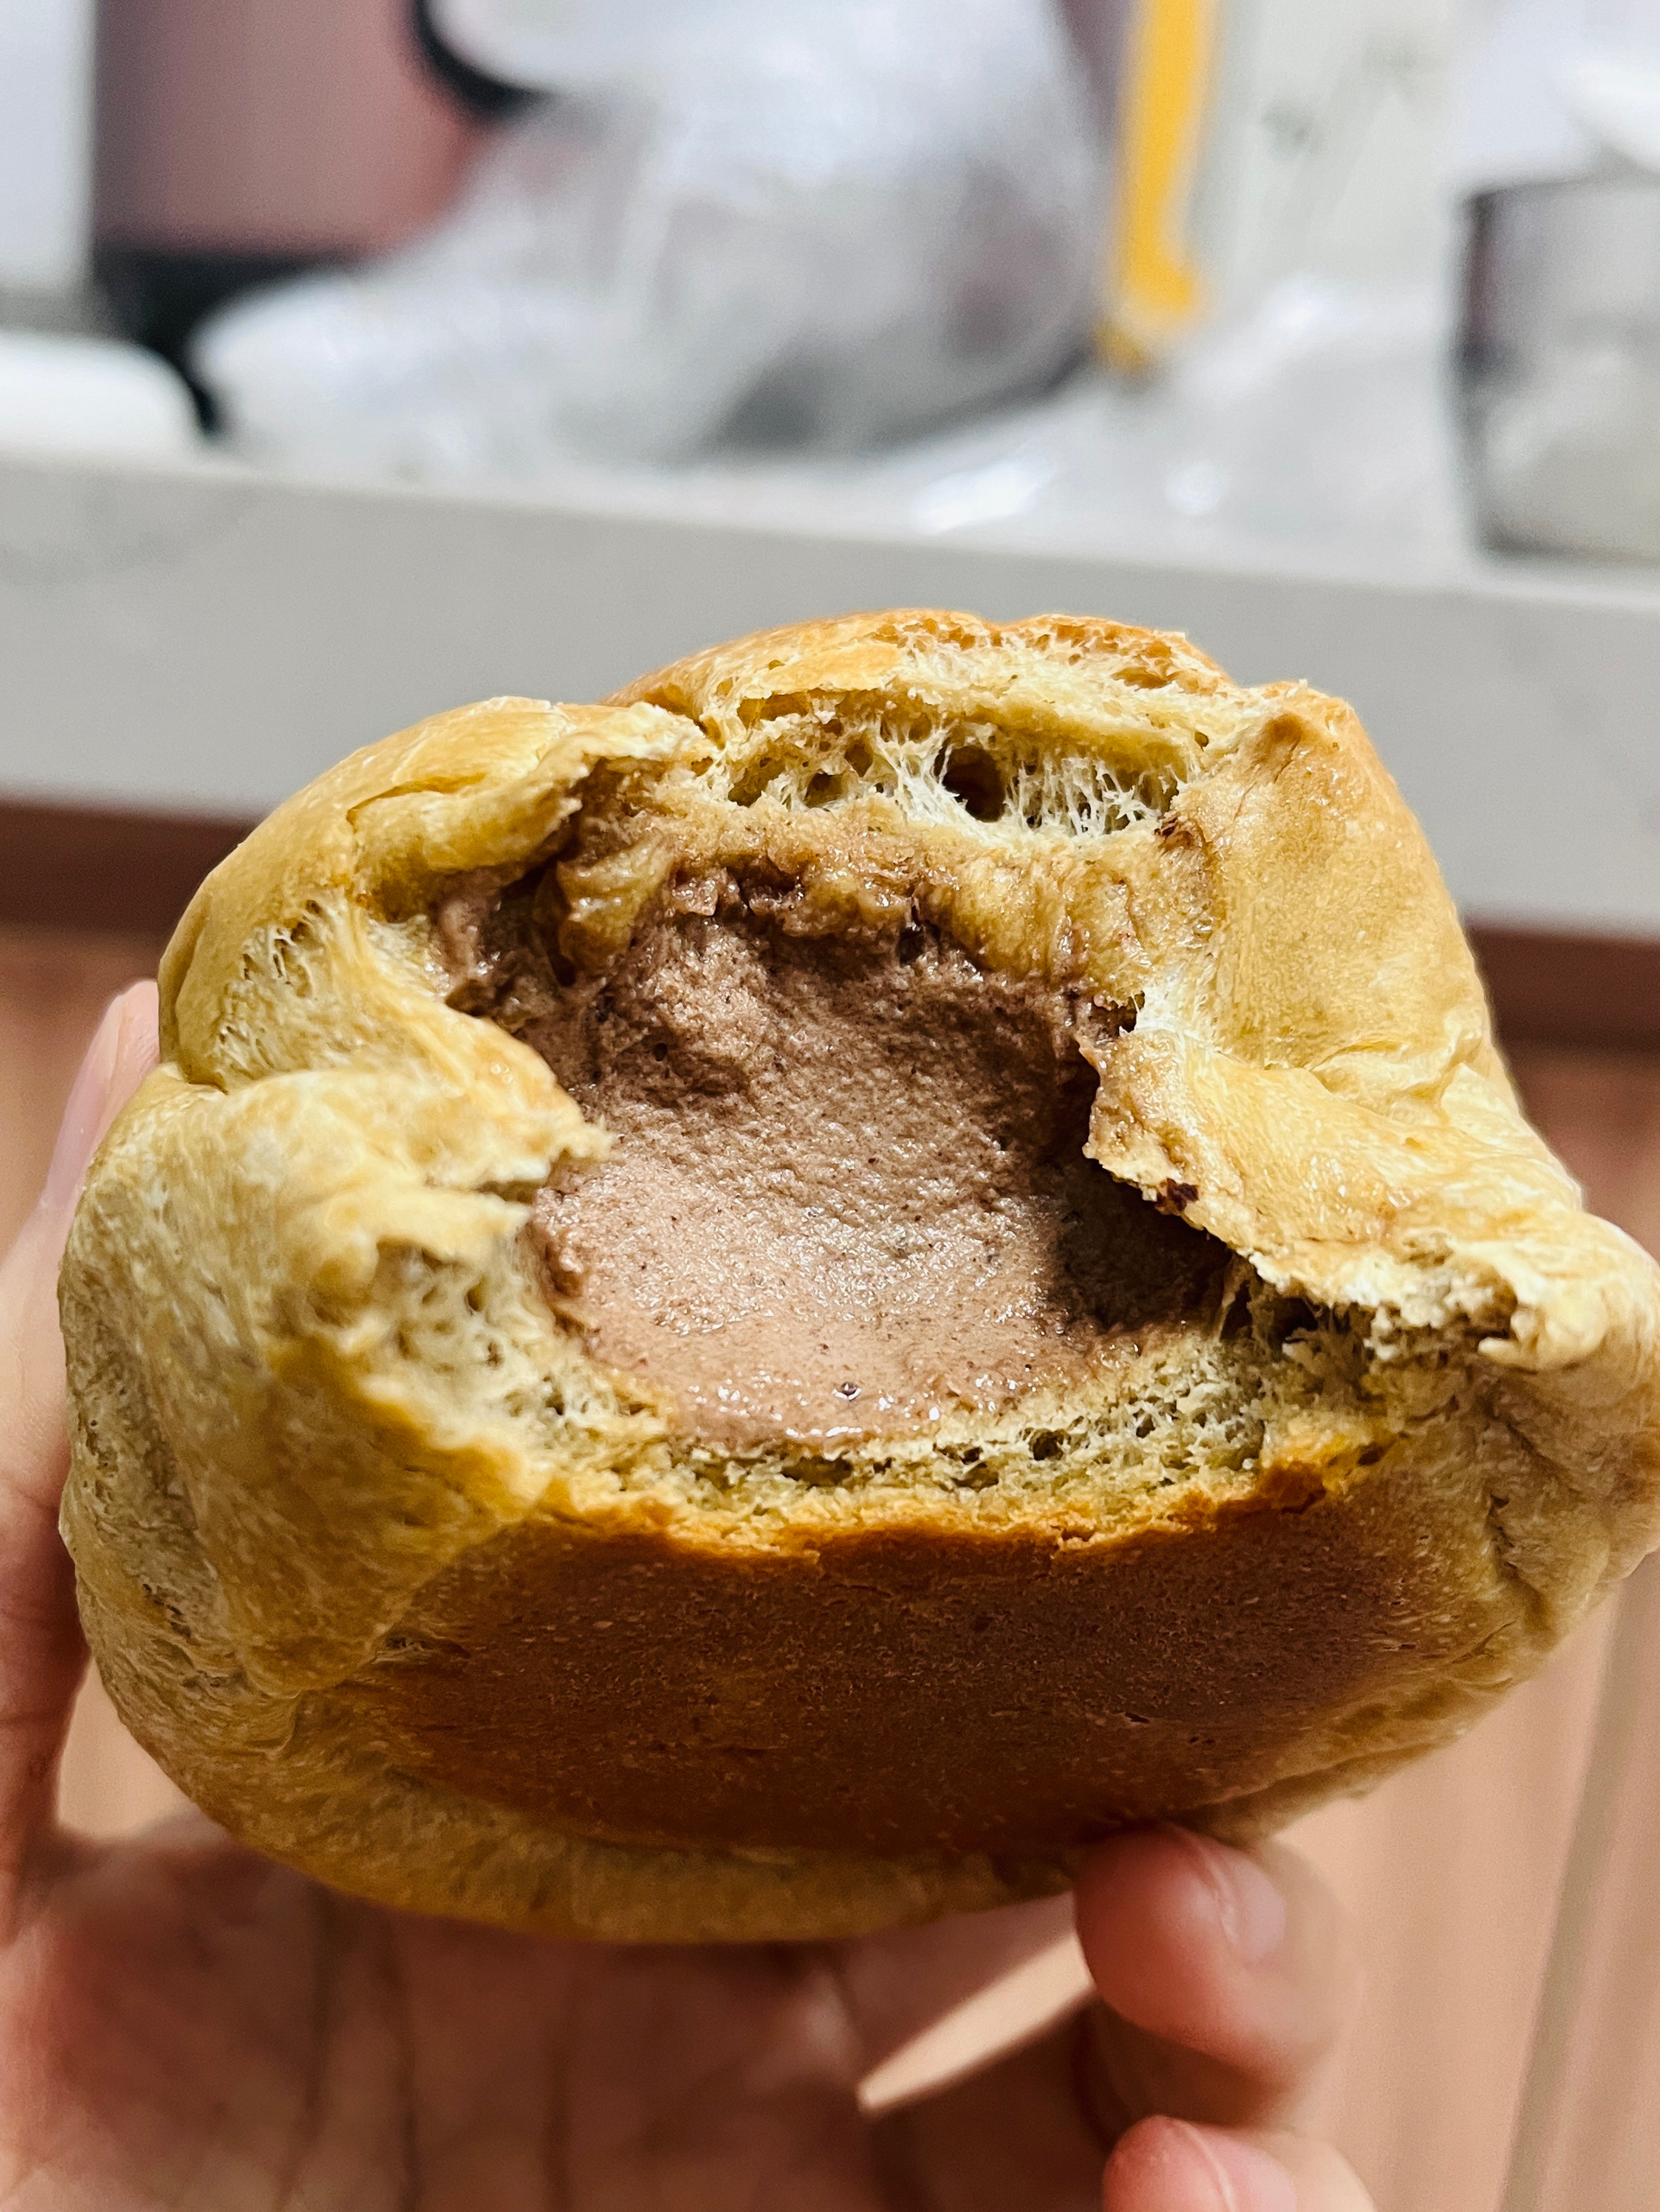 摩卡巧克力冰面包🍞冰冰凉凉的固体咖啡